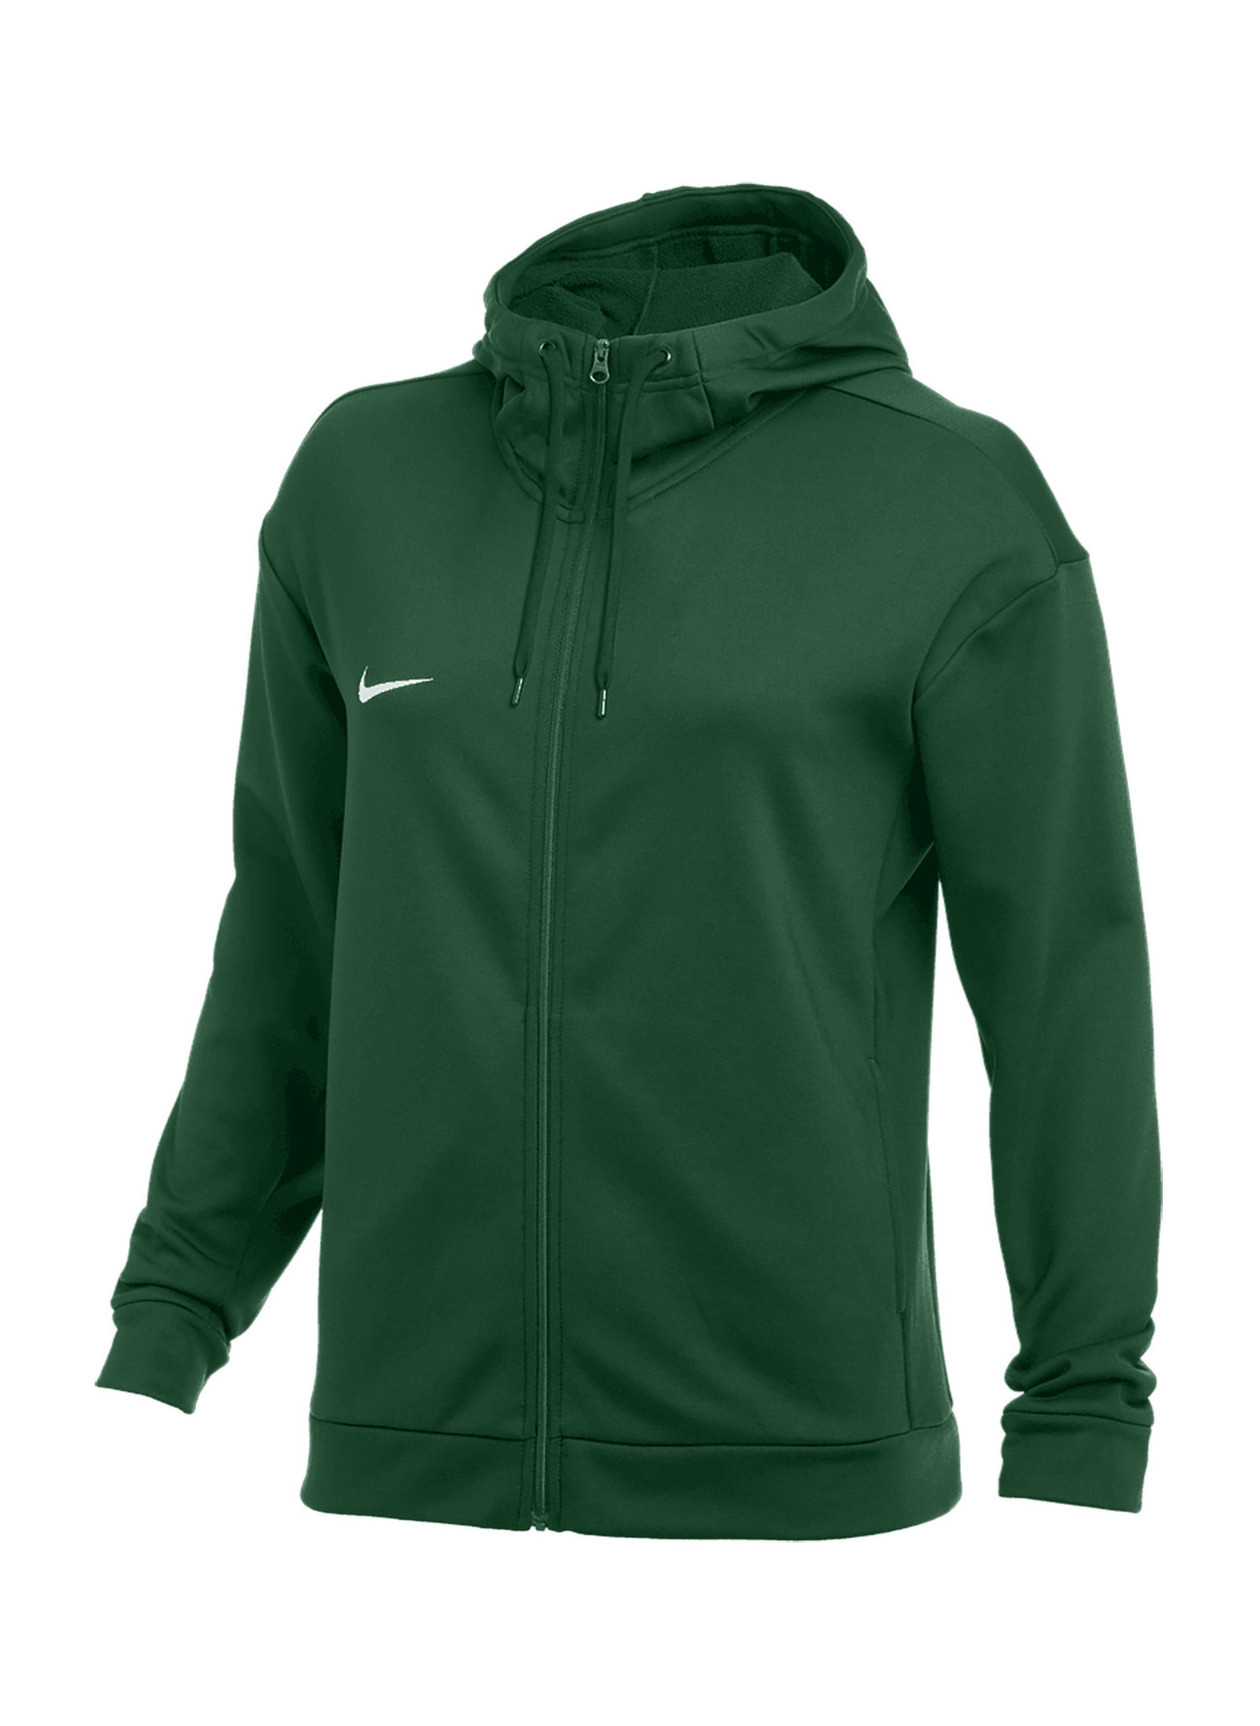 Nike Women's Team Dark Green / White Therma Full-Zip Training Hoodie